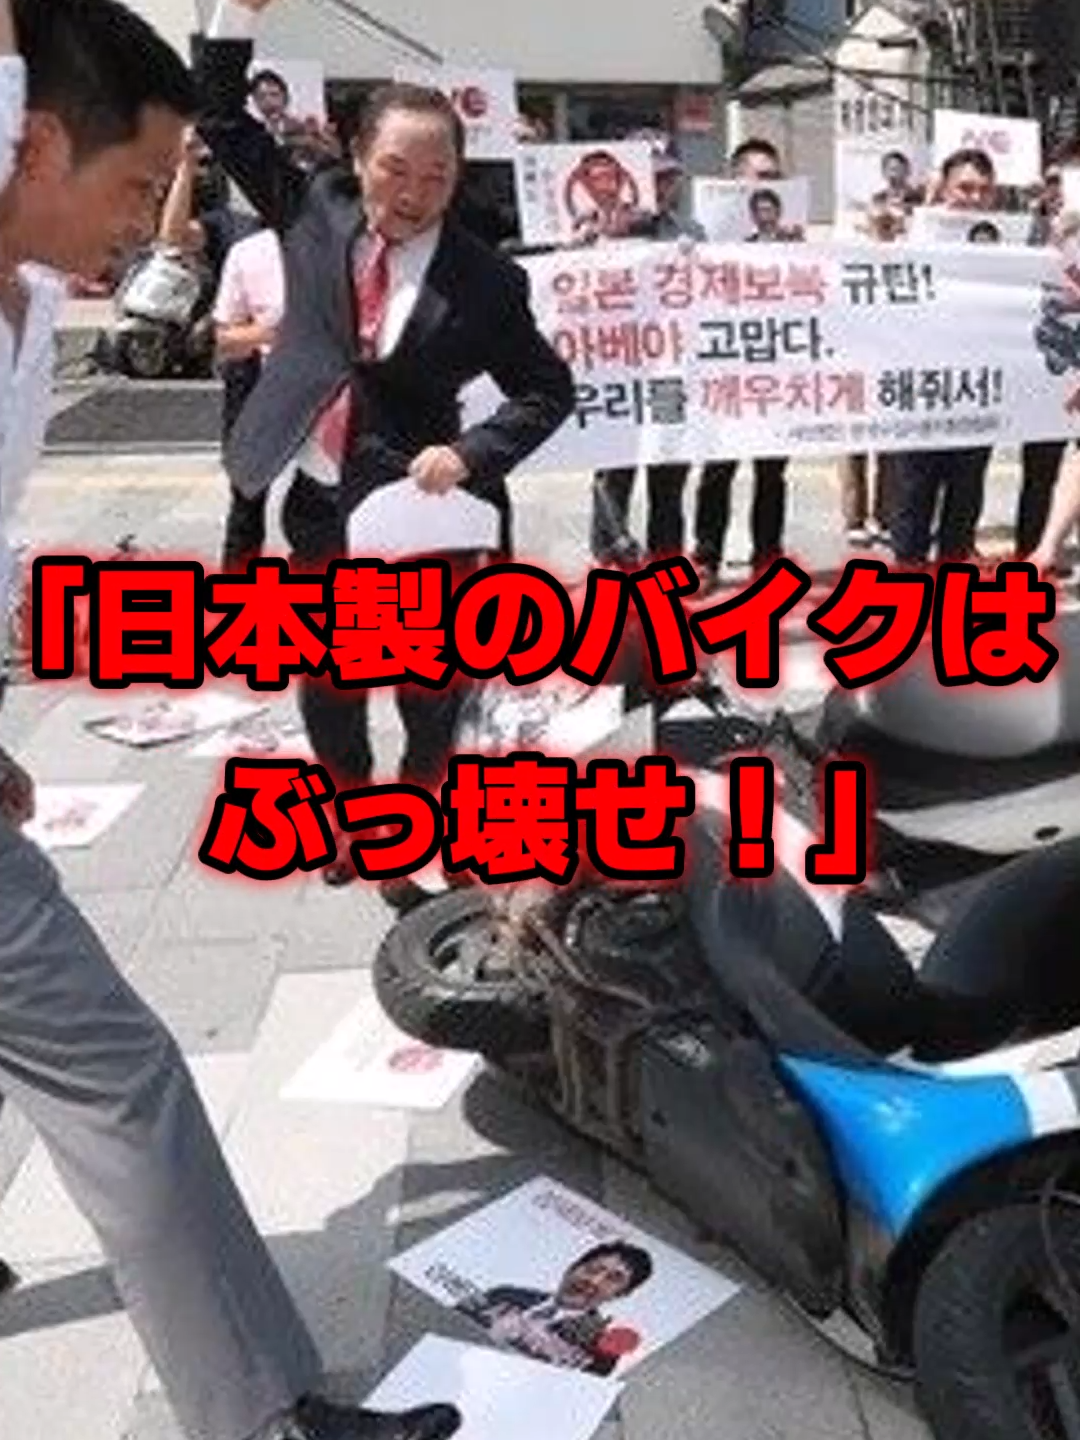 韓国がHONDAをバカにした結果→日本大激怒で撤退し、韓国民大号泣… #海外の反応 #honda #韓国 #反日